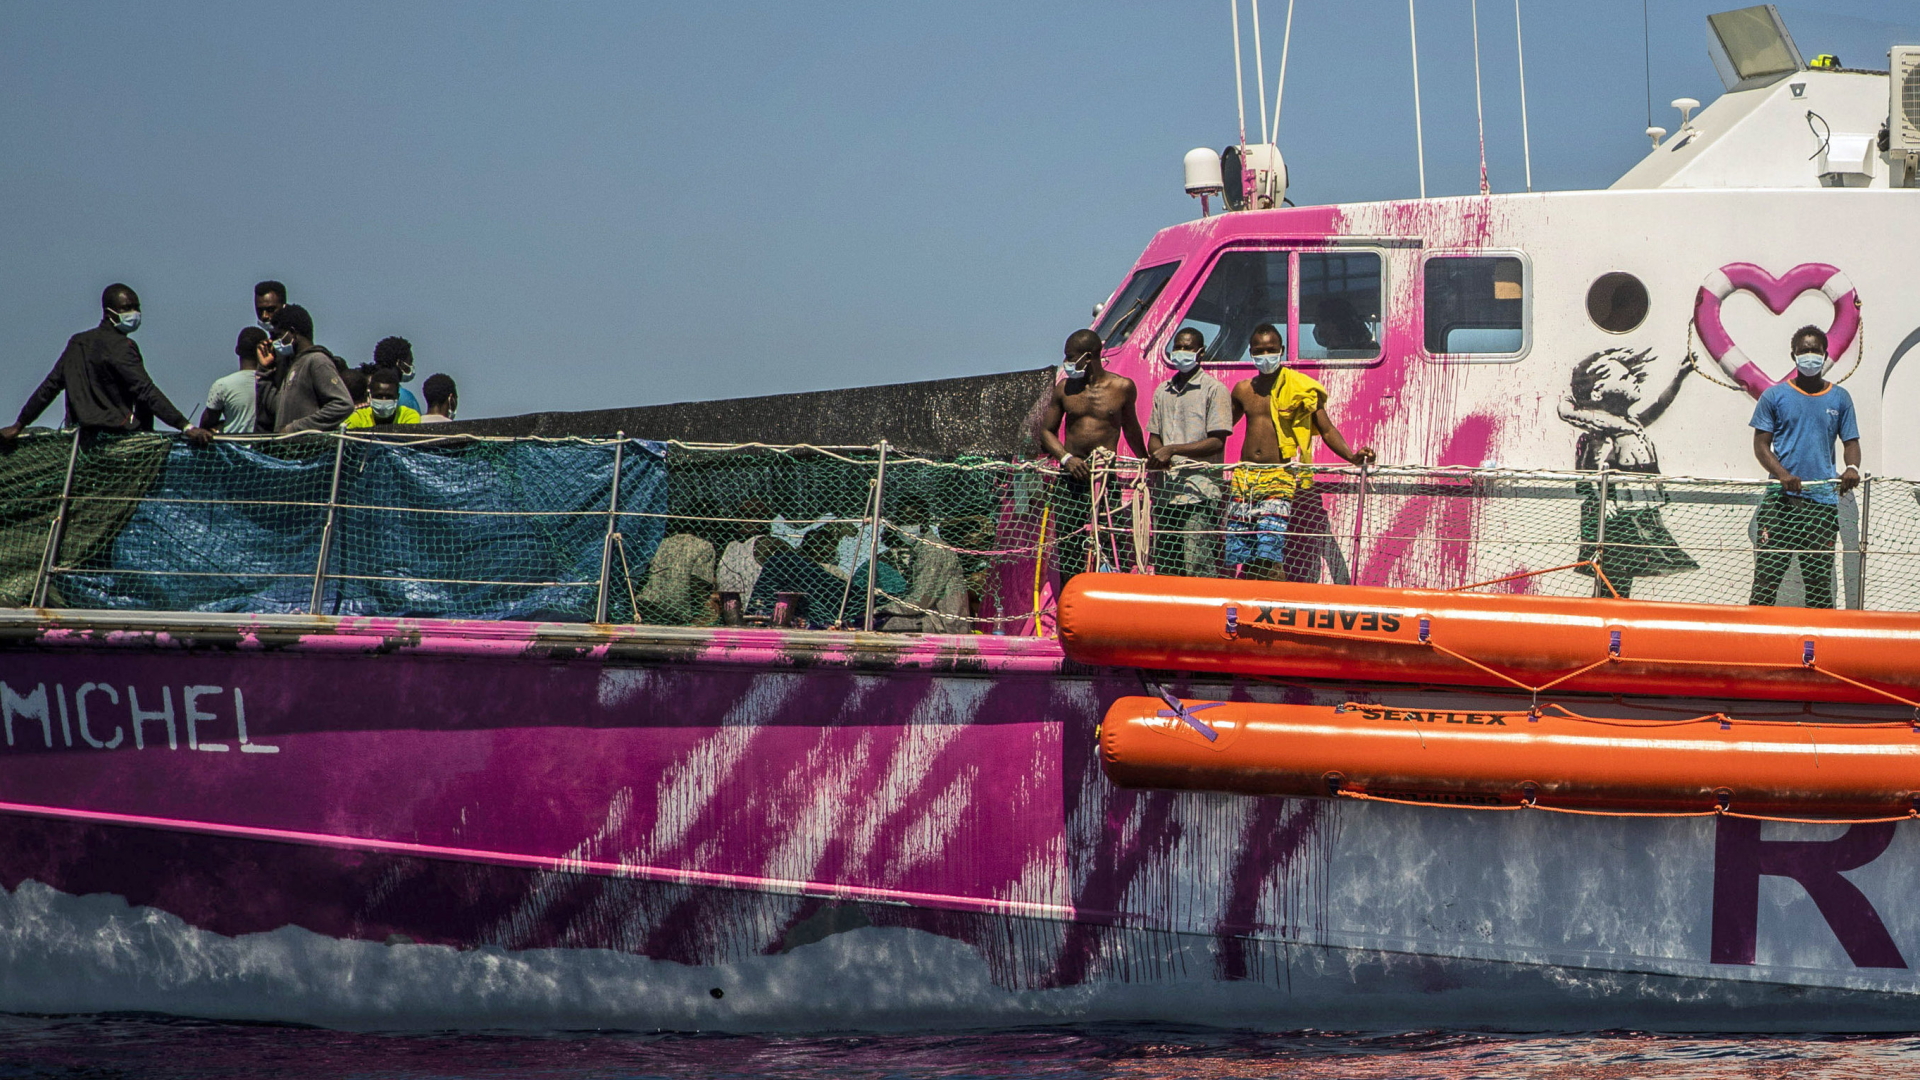 Menschen stehen auf dem Deck des Rettungsschiffs "Louise Michel" | AP